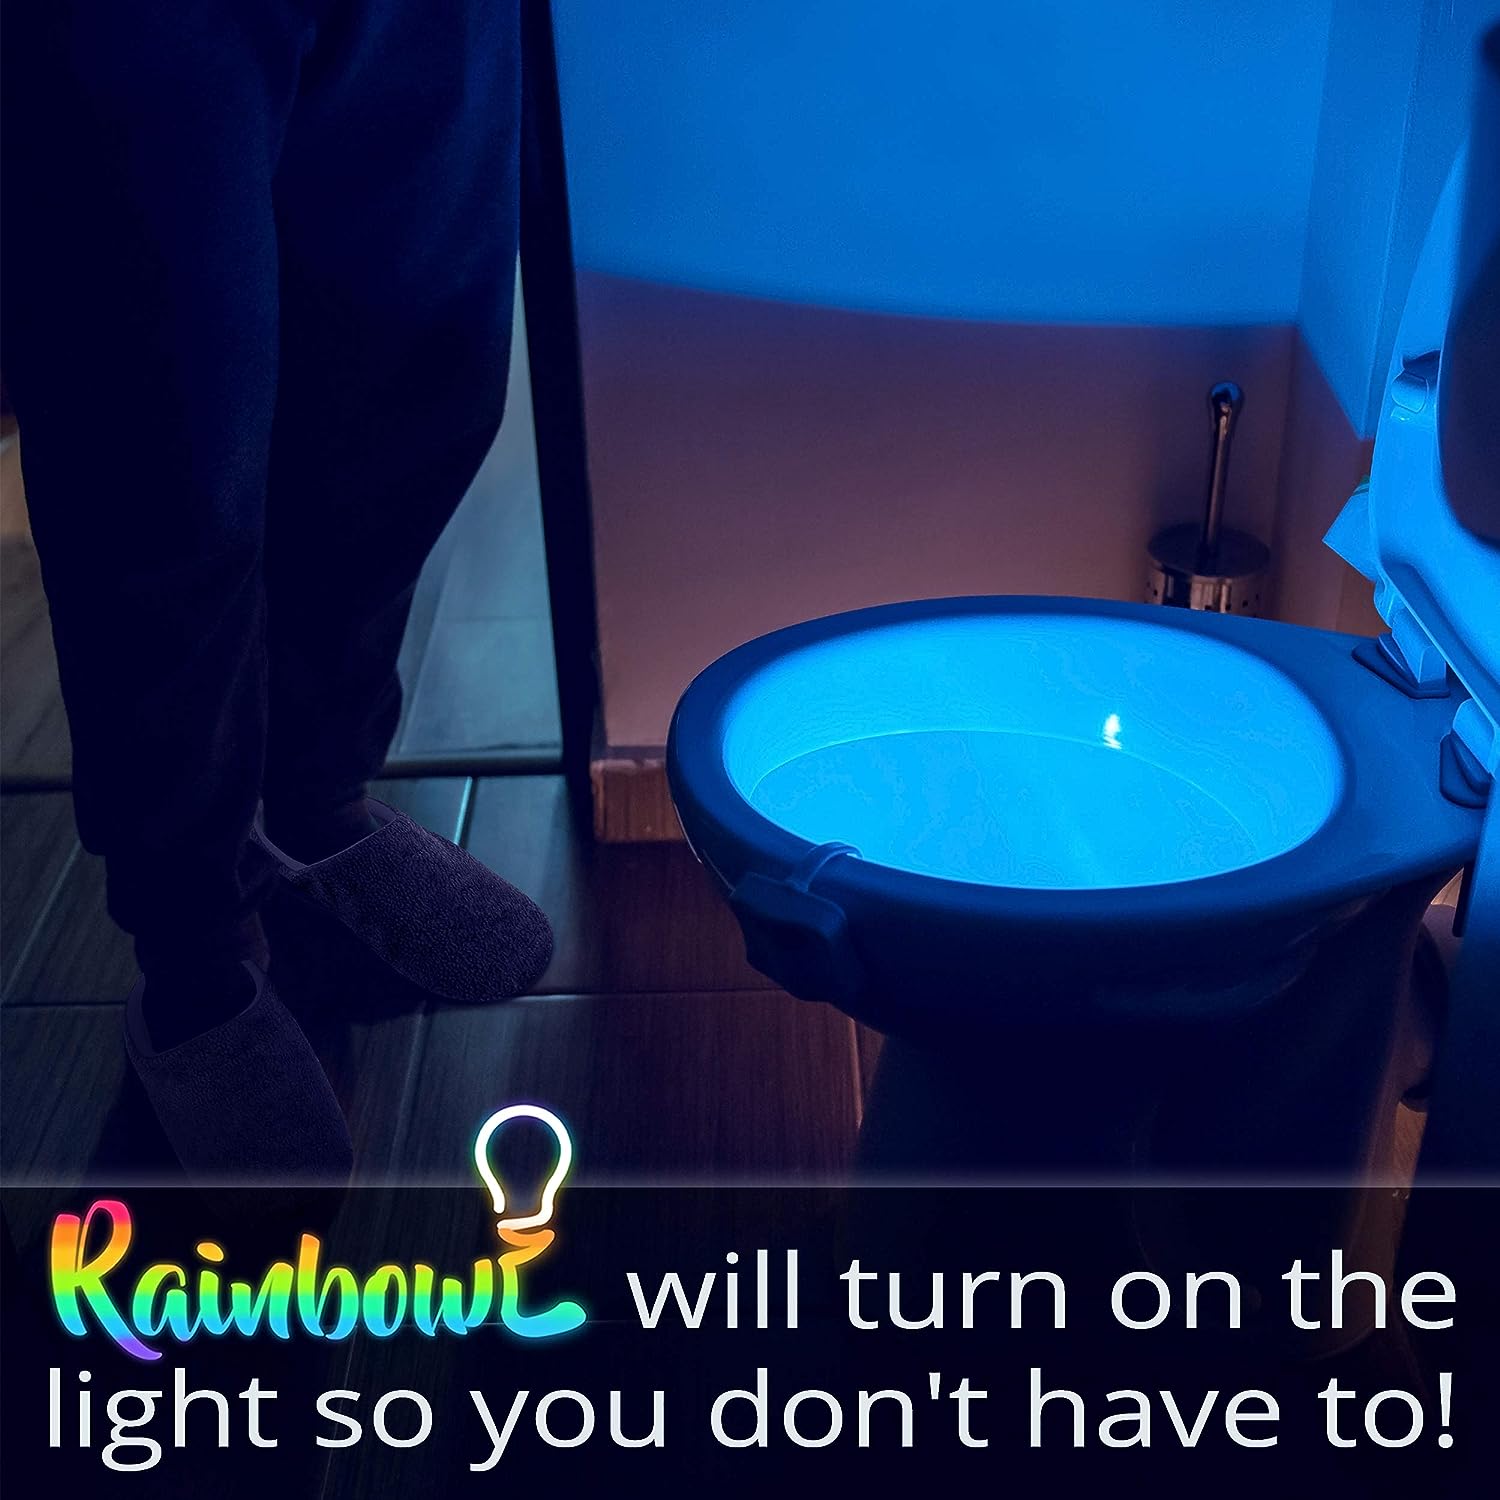 RainBowl Toilet Light with Motion Sensor - Unique Cool Gadget Review